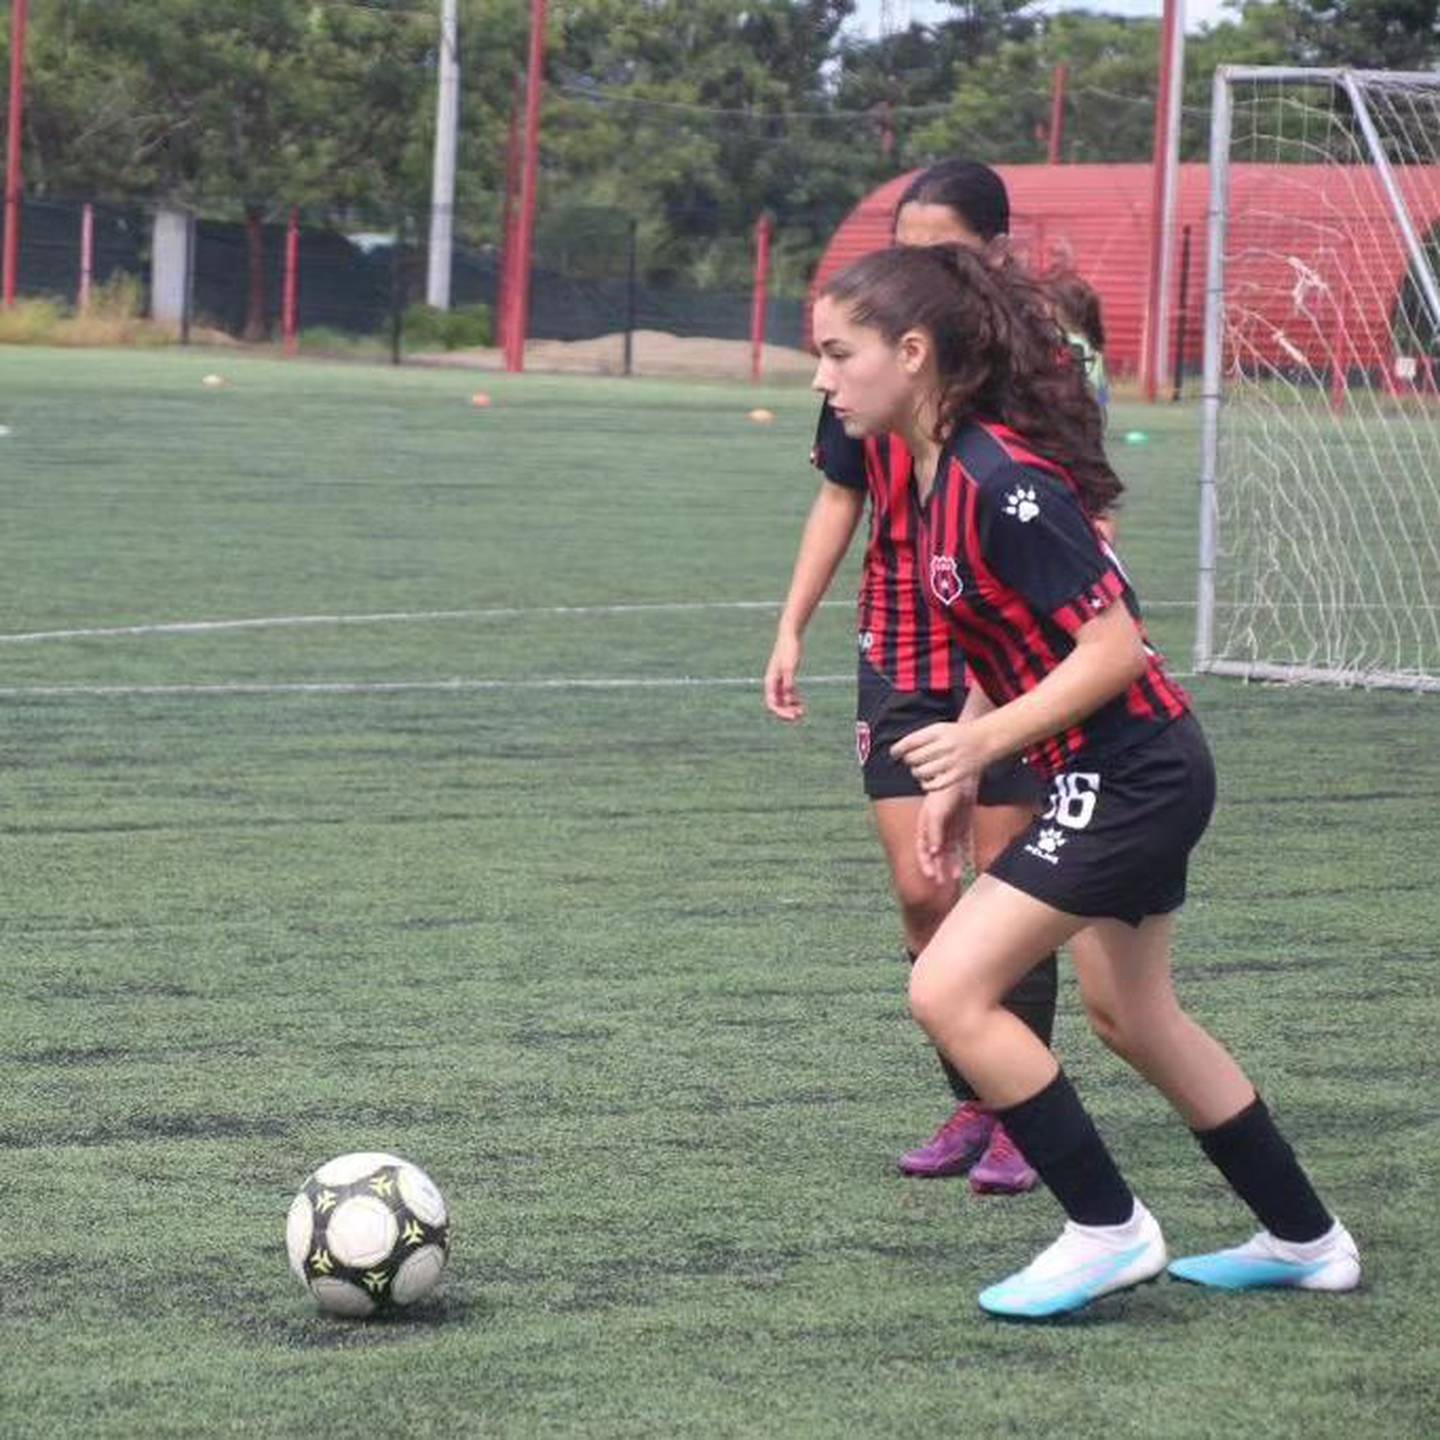 Wyzangel López, hija de Wílmer López, tiene 15 años y juega en las ligas menores de Alajuelense. Foto: Instagram